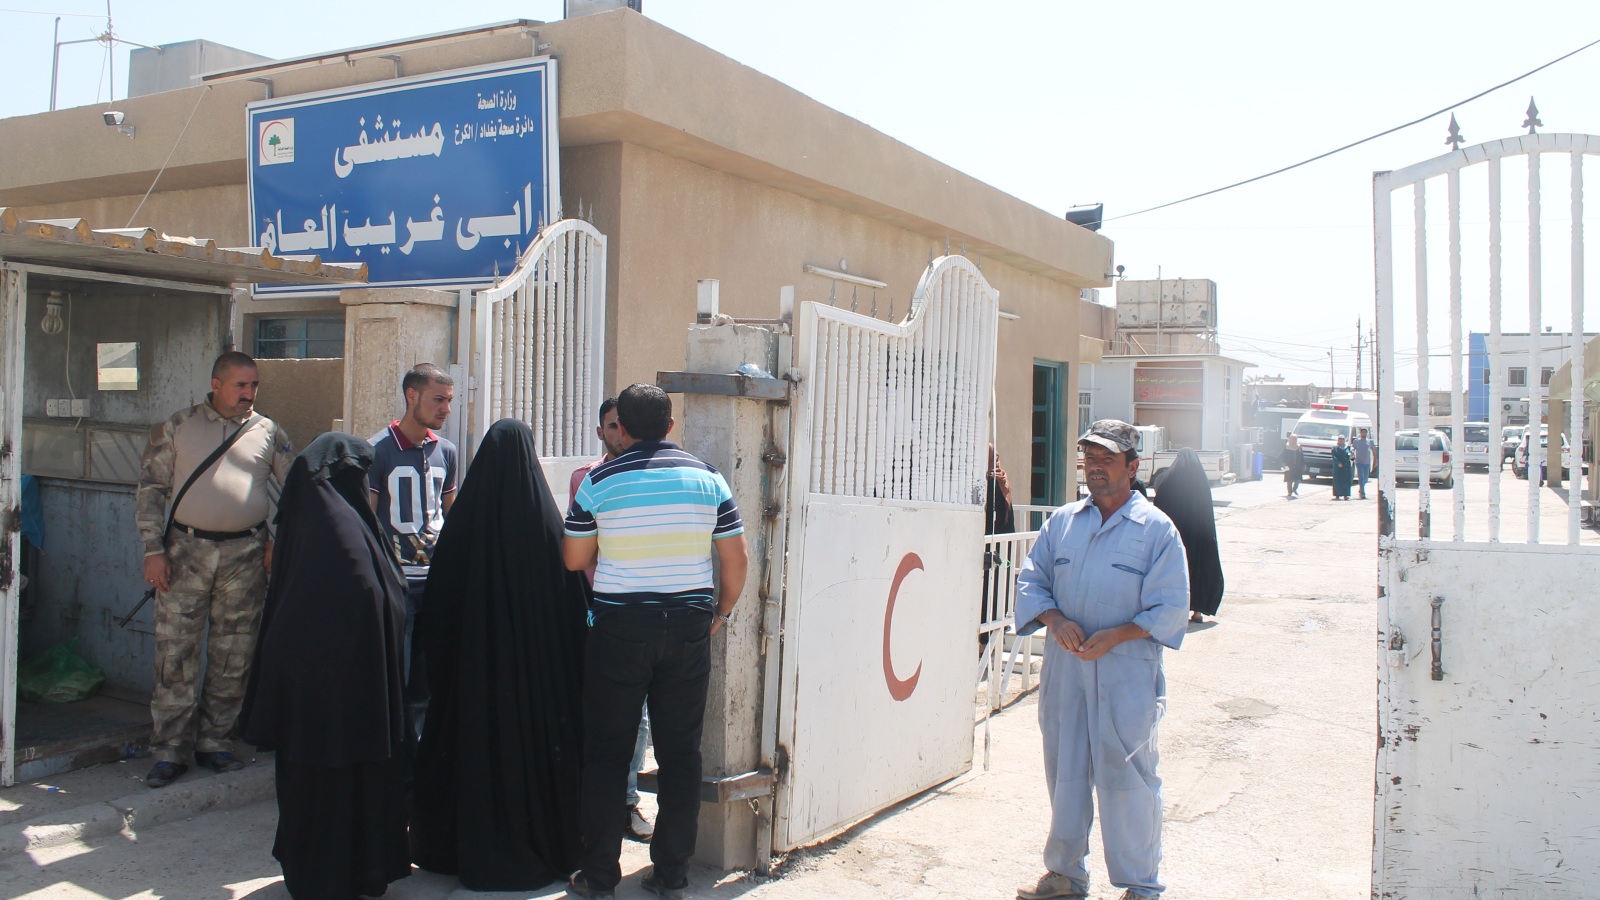 ‪كثرة عدد المصابين في أبو غريب دفعت السلطات المحلية لإفراغ المستشفى من الحالات الأخرى‬ (الجزيرة)